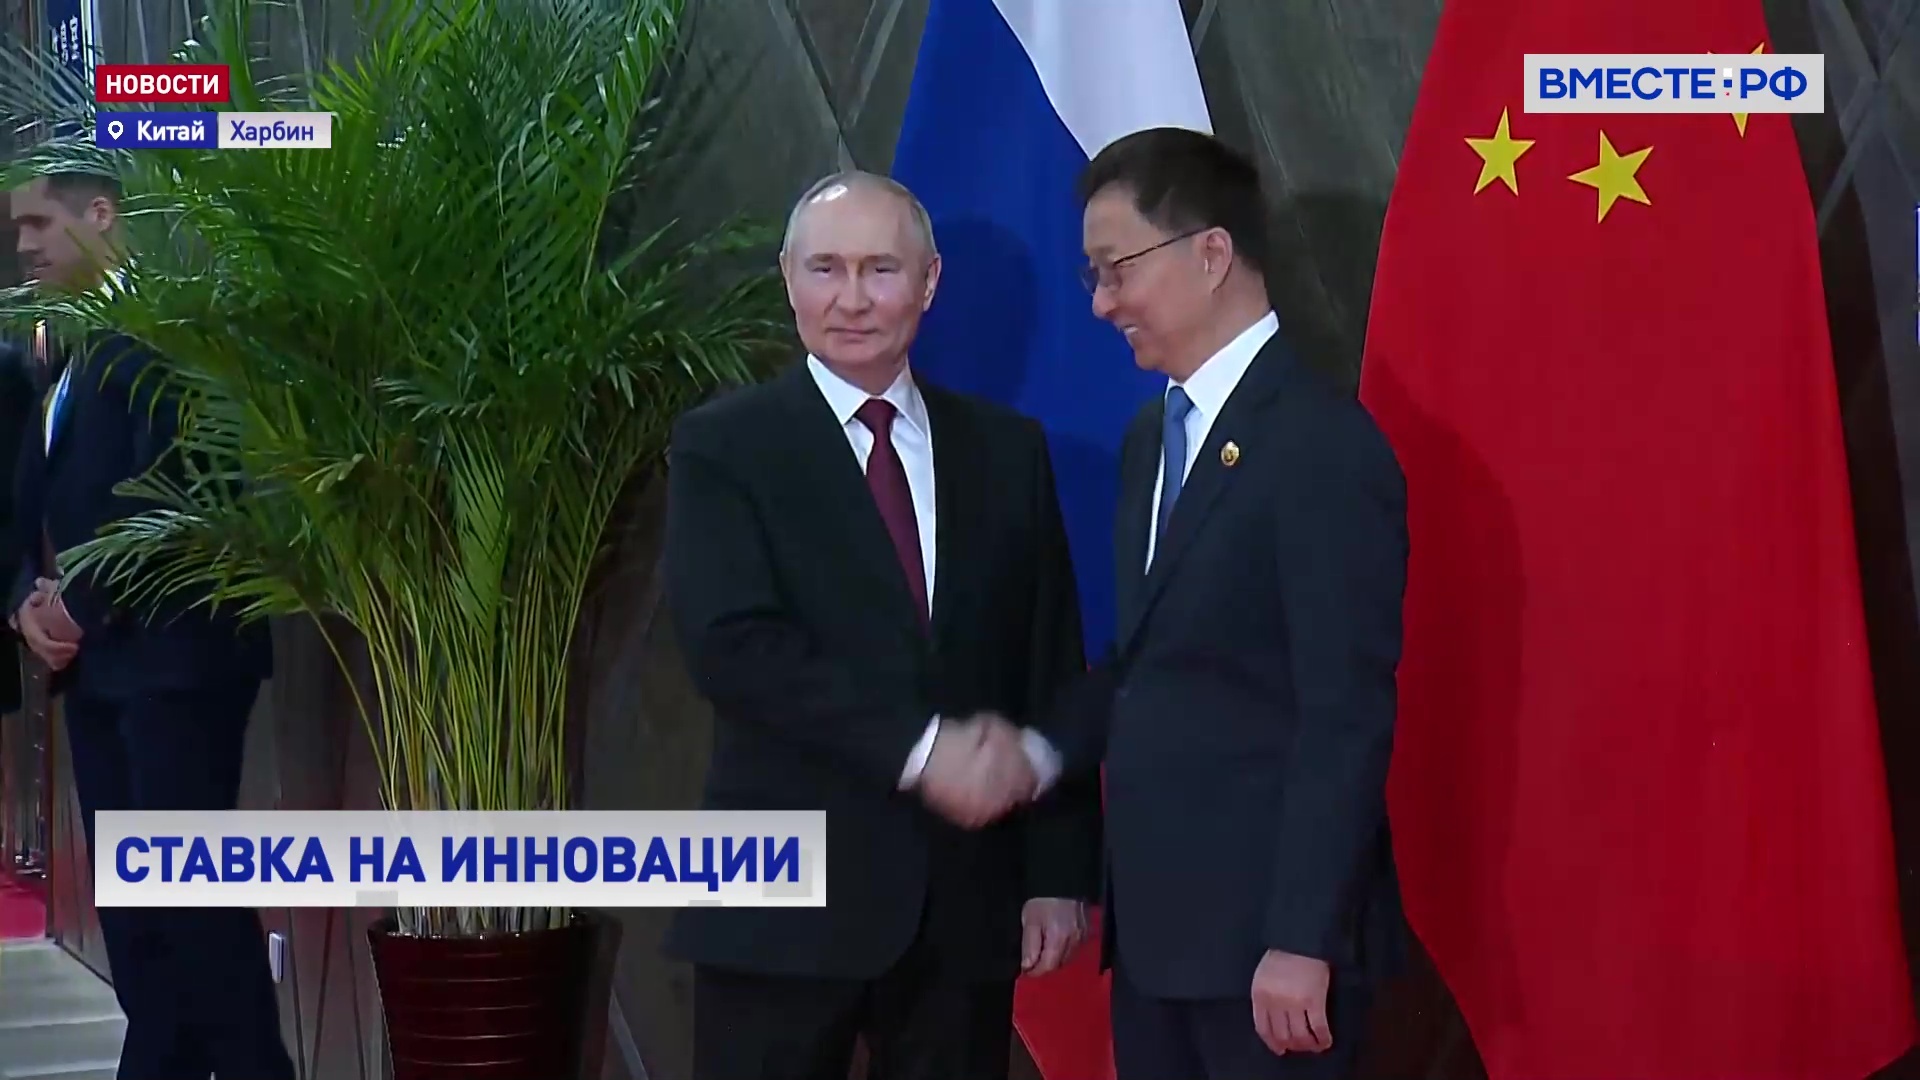 Россия готова предоставлять инвесторам из КНР экономические льготы, заявил Путин